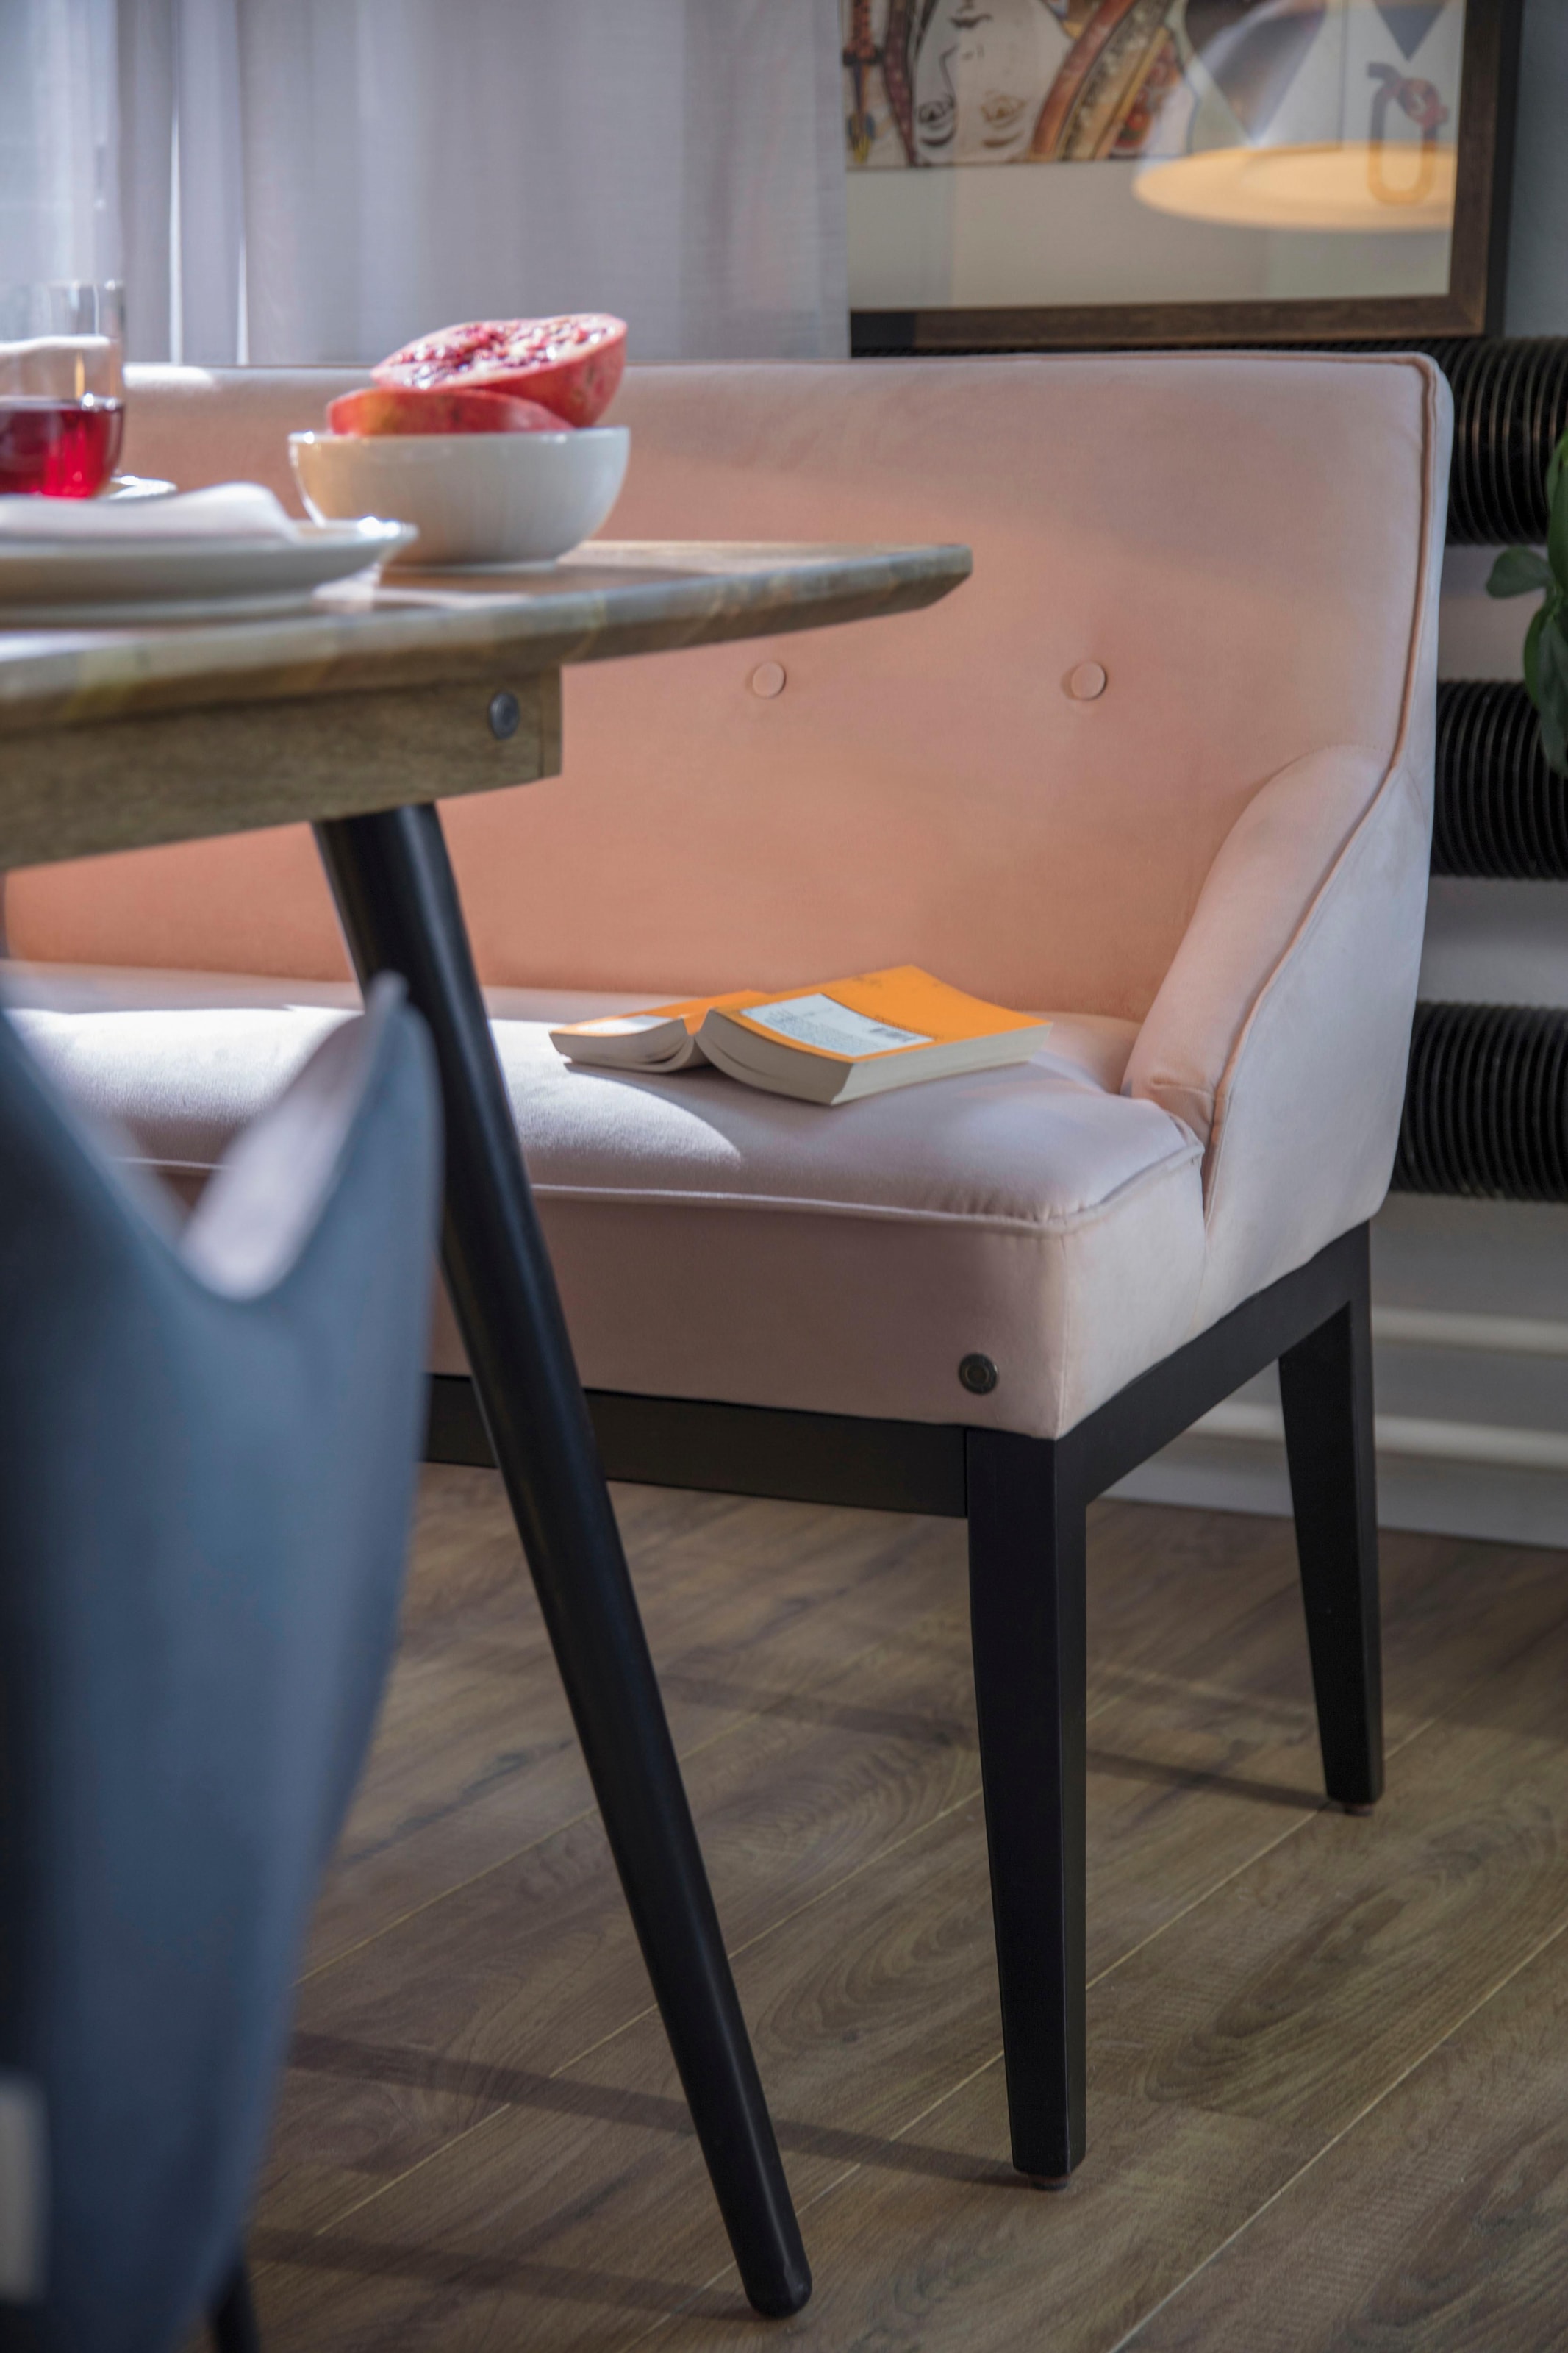 TOM TAILOR HOME Esstisch »T-SOHO TABLE LARGE«, aus Mangoholz, Breite 180 cm  auf Raten bestellen